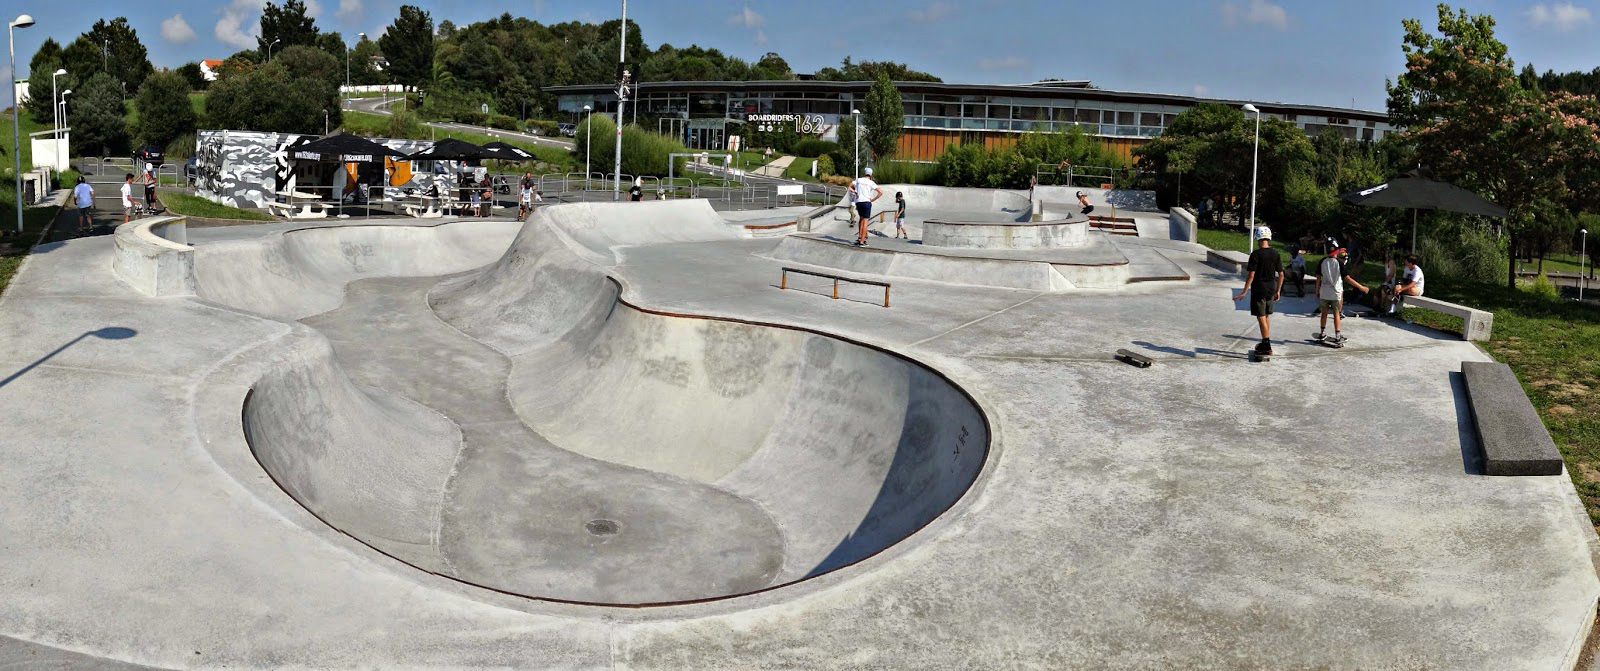 Le Skatepark de Saint Jean de Luz au Pays Basque Quiksilver avec son bowl